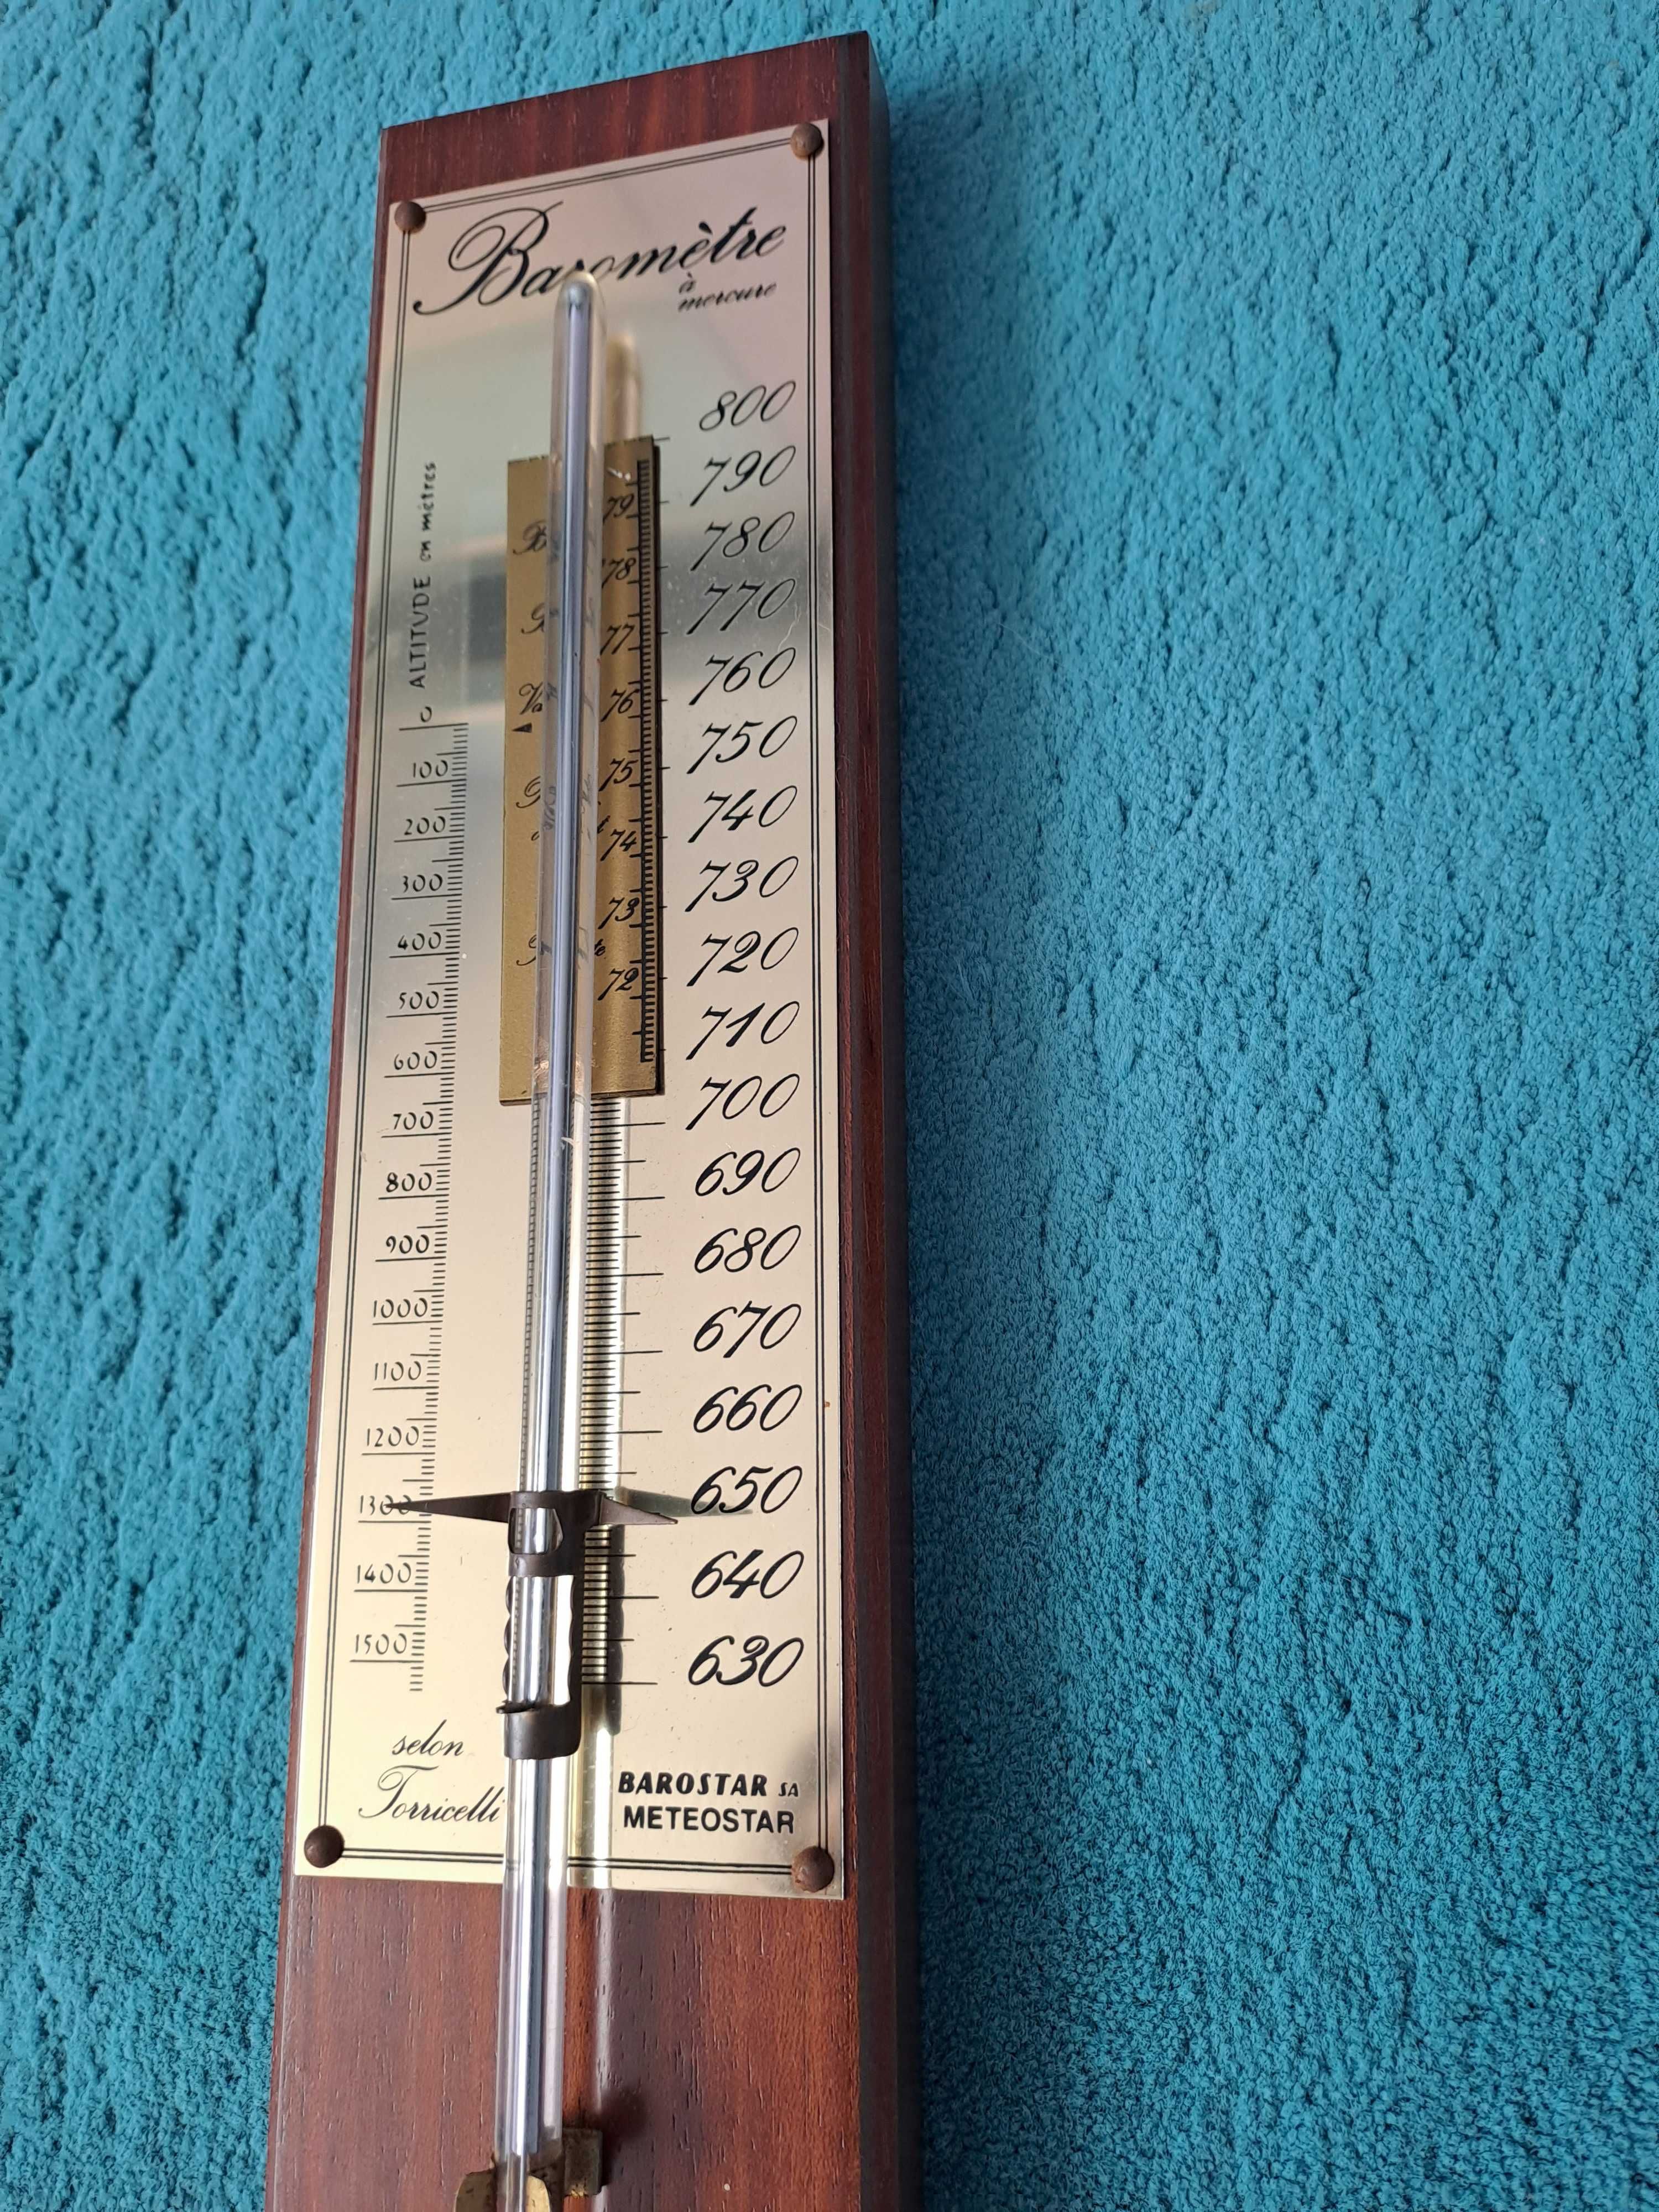 Termometru vechi Torricelli